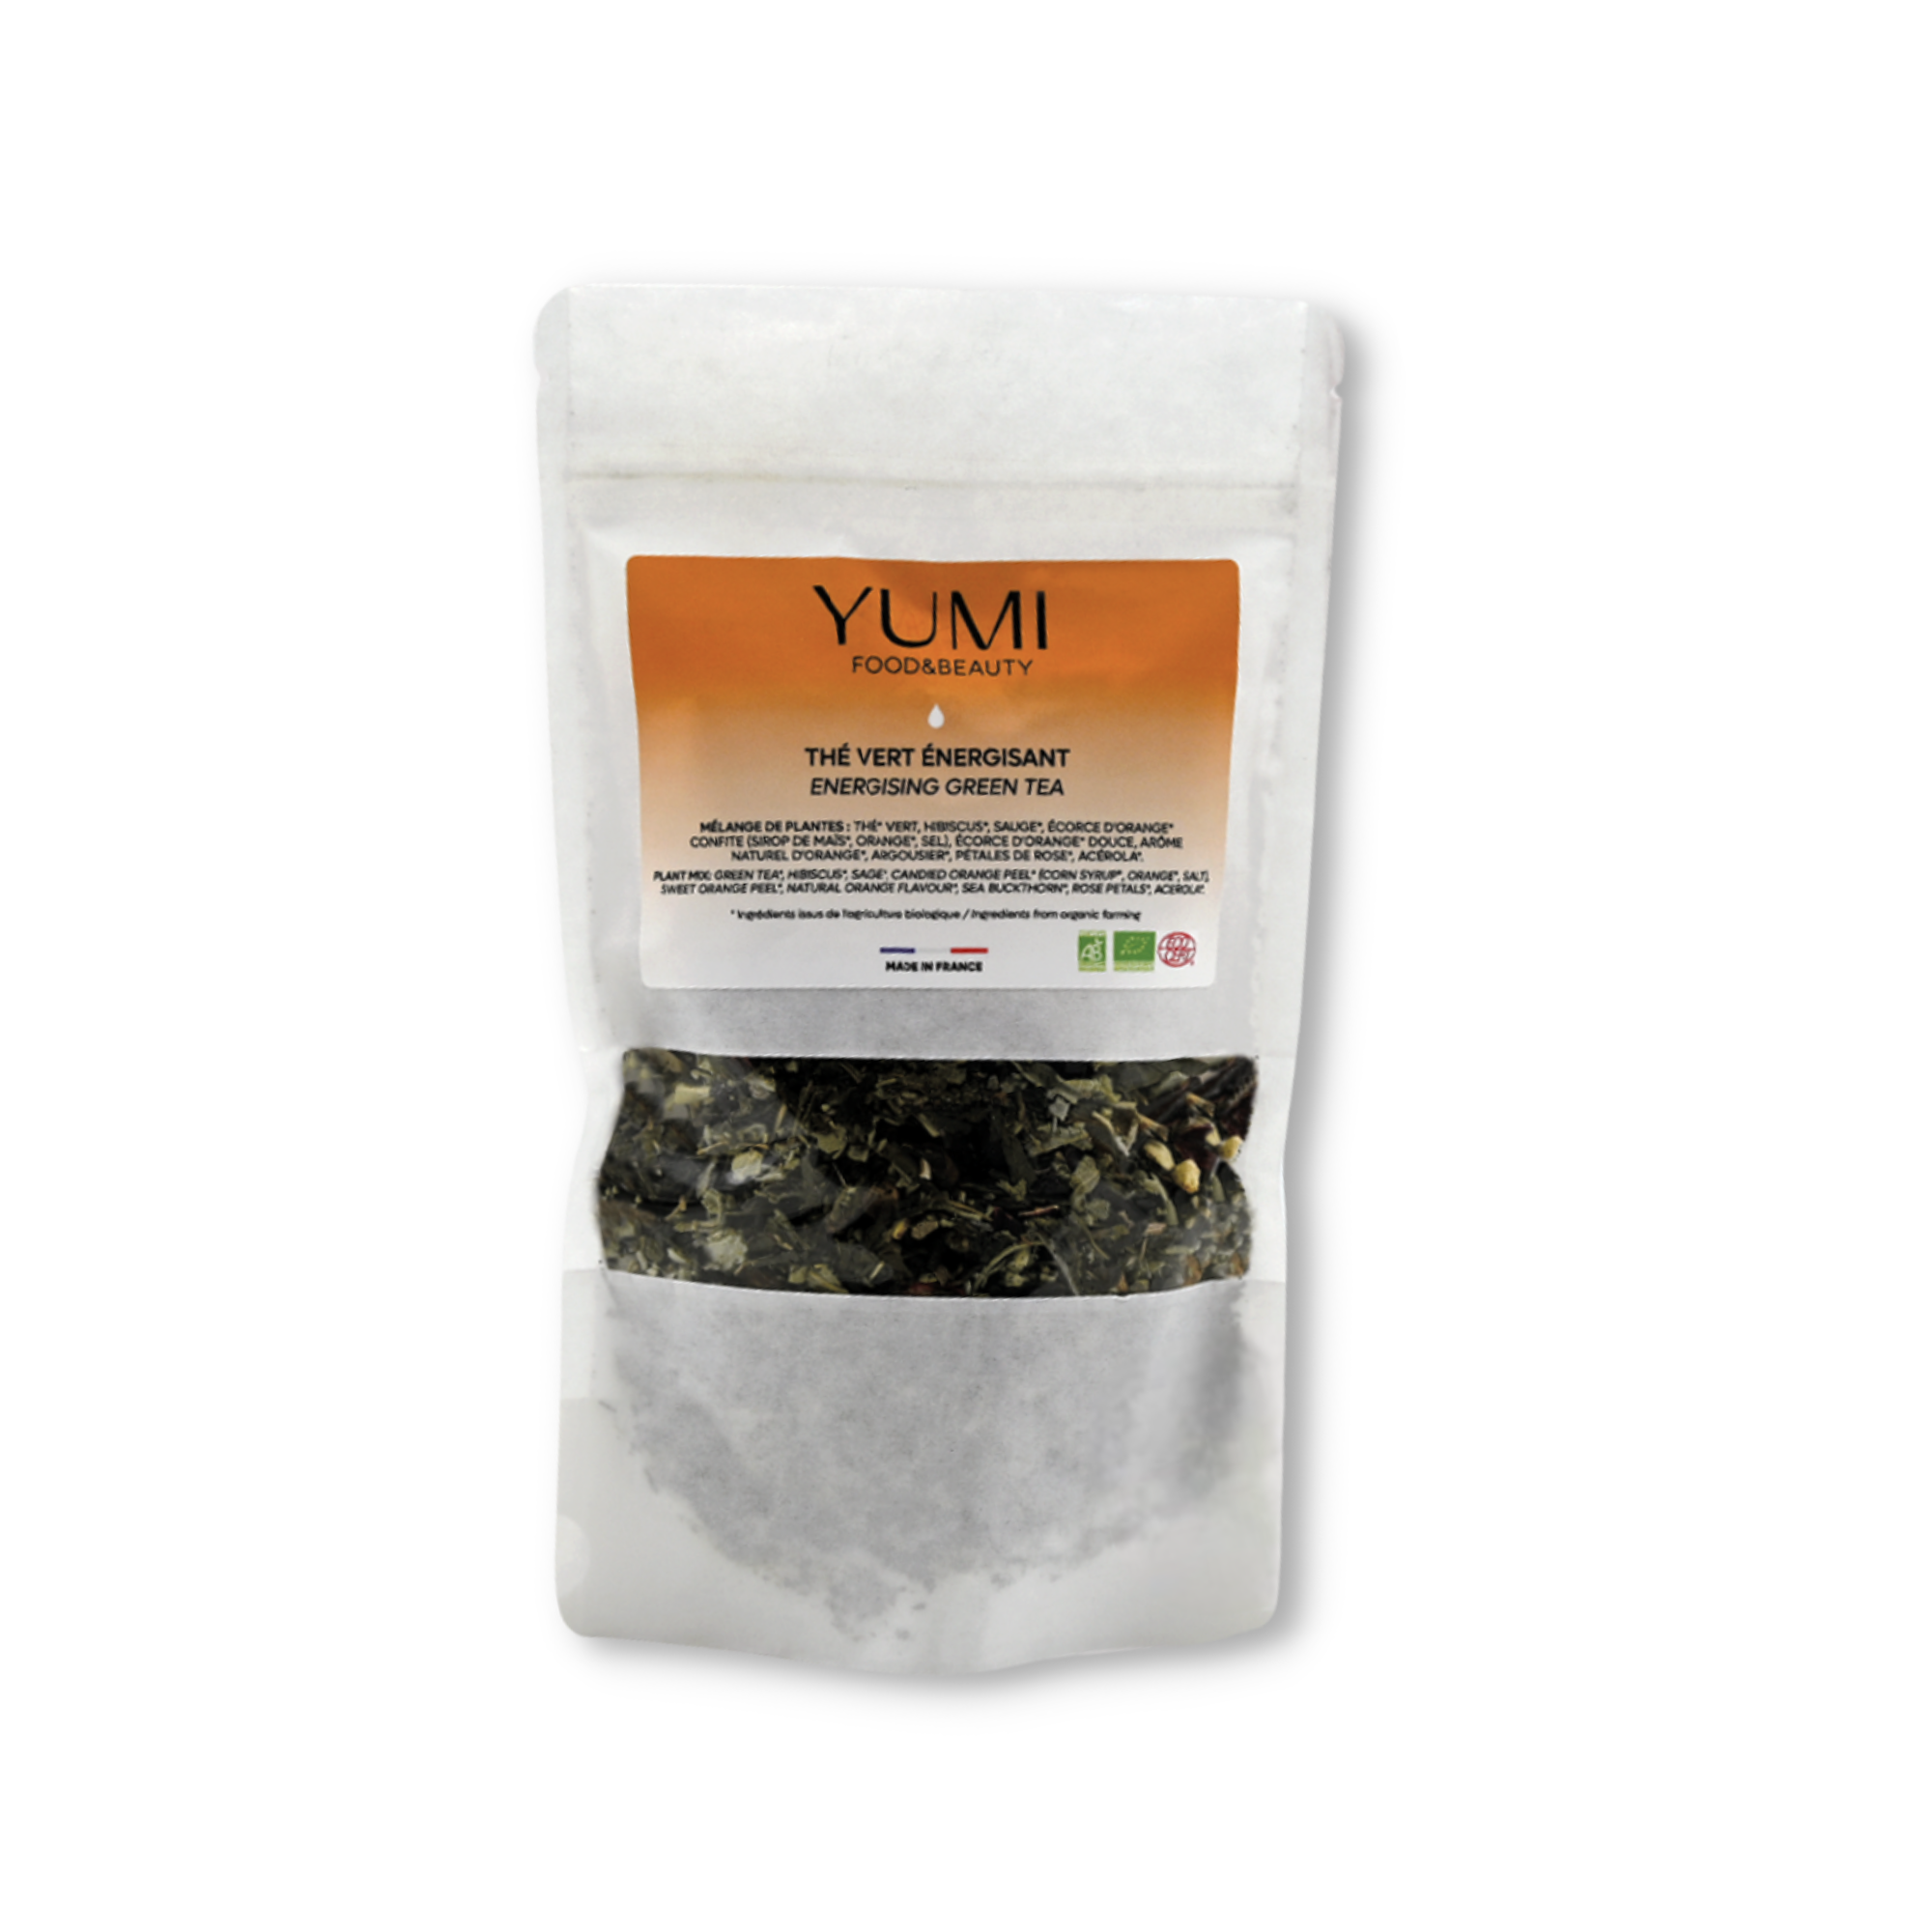 Yumi Food & Beauty Energising Green Tea